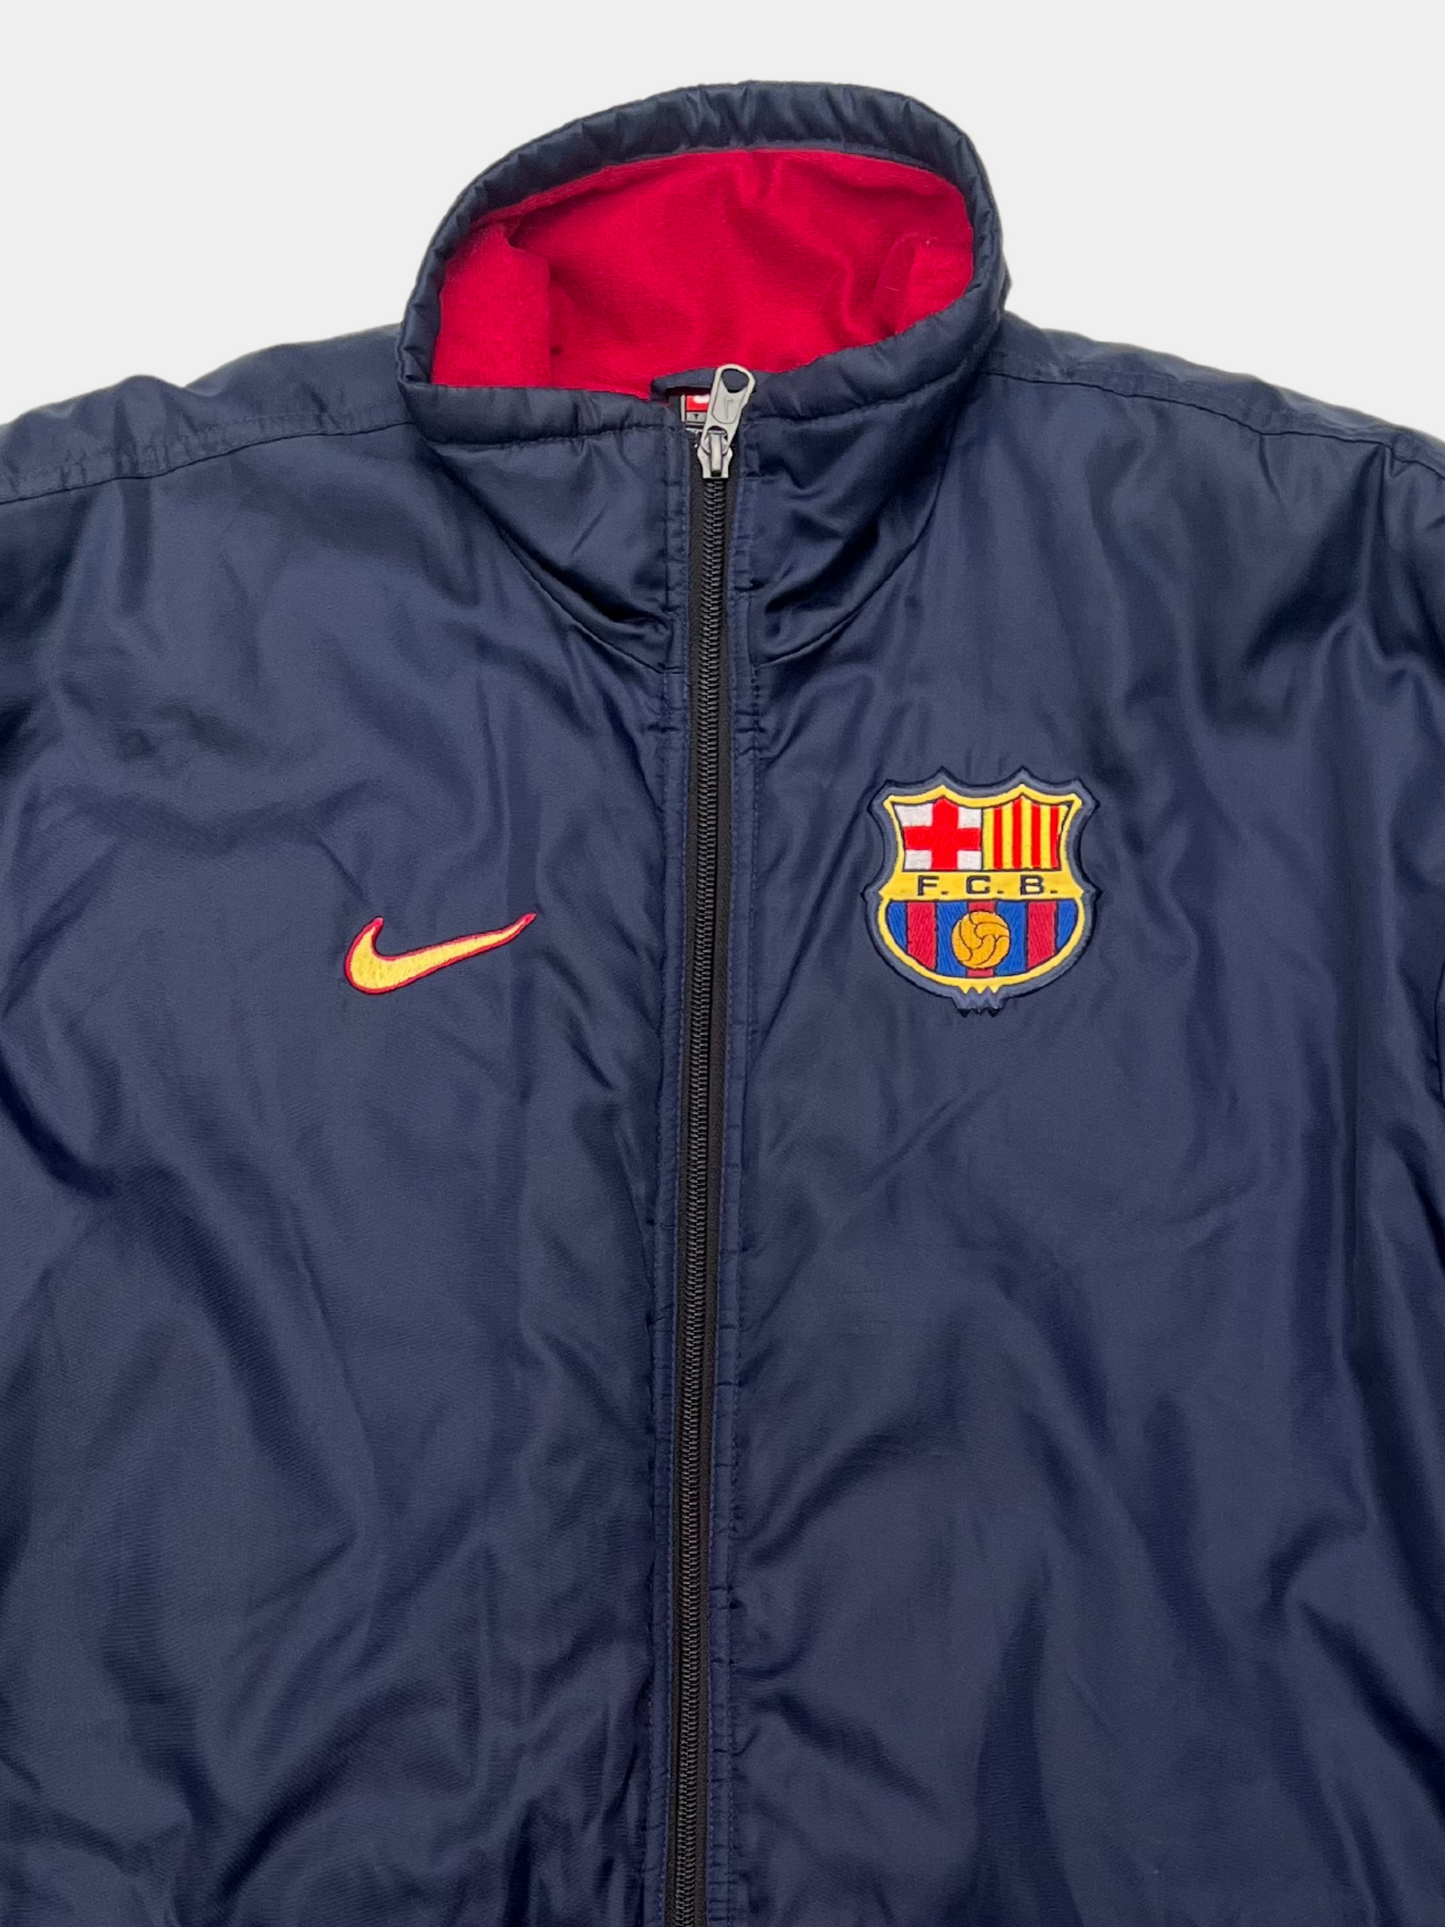 Barcelona 1998 2000 Jacket (S)